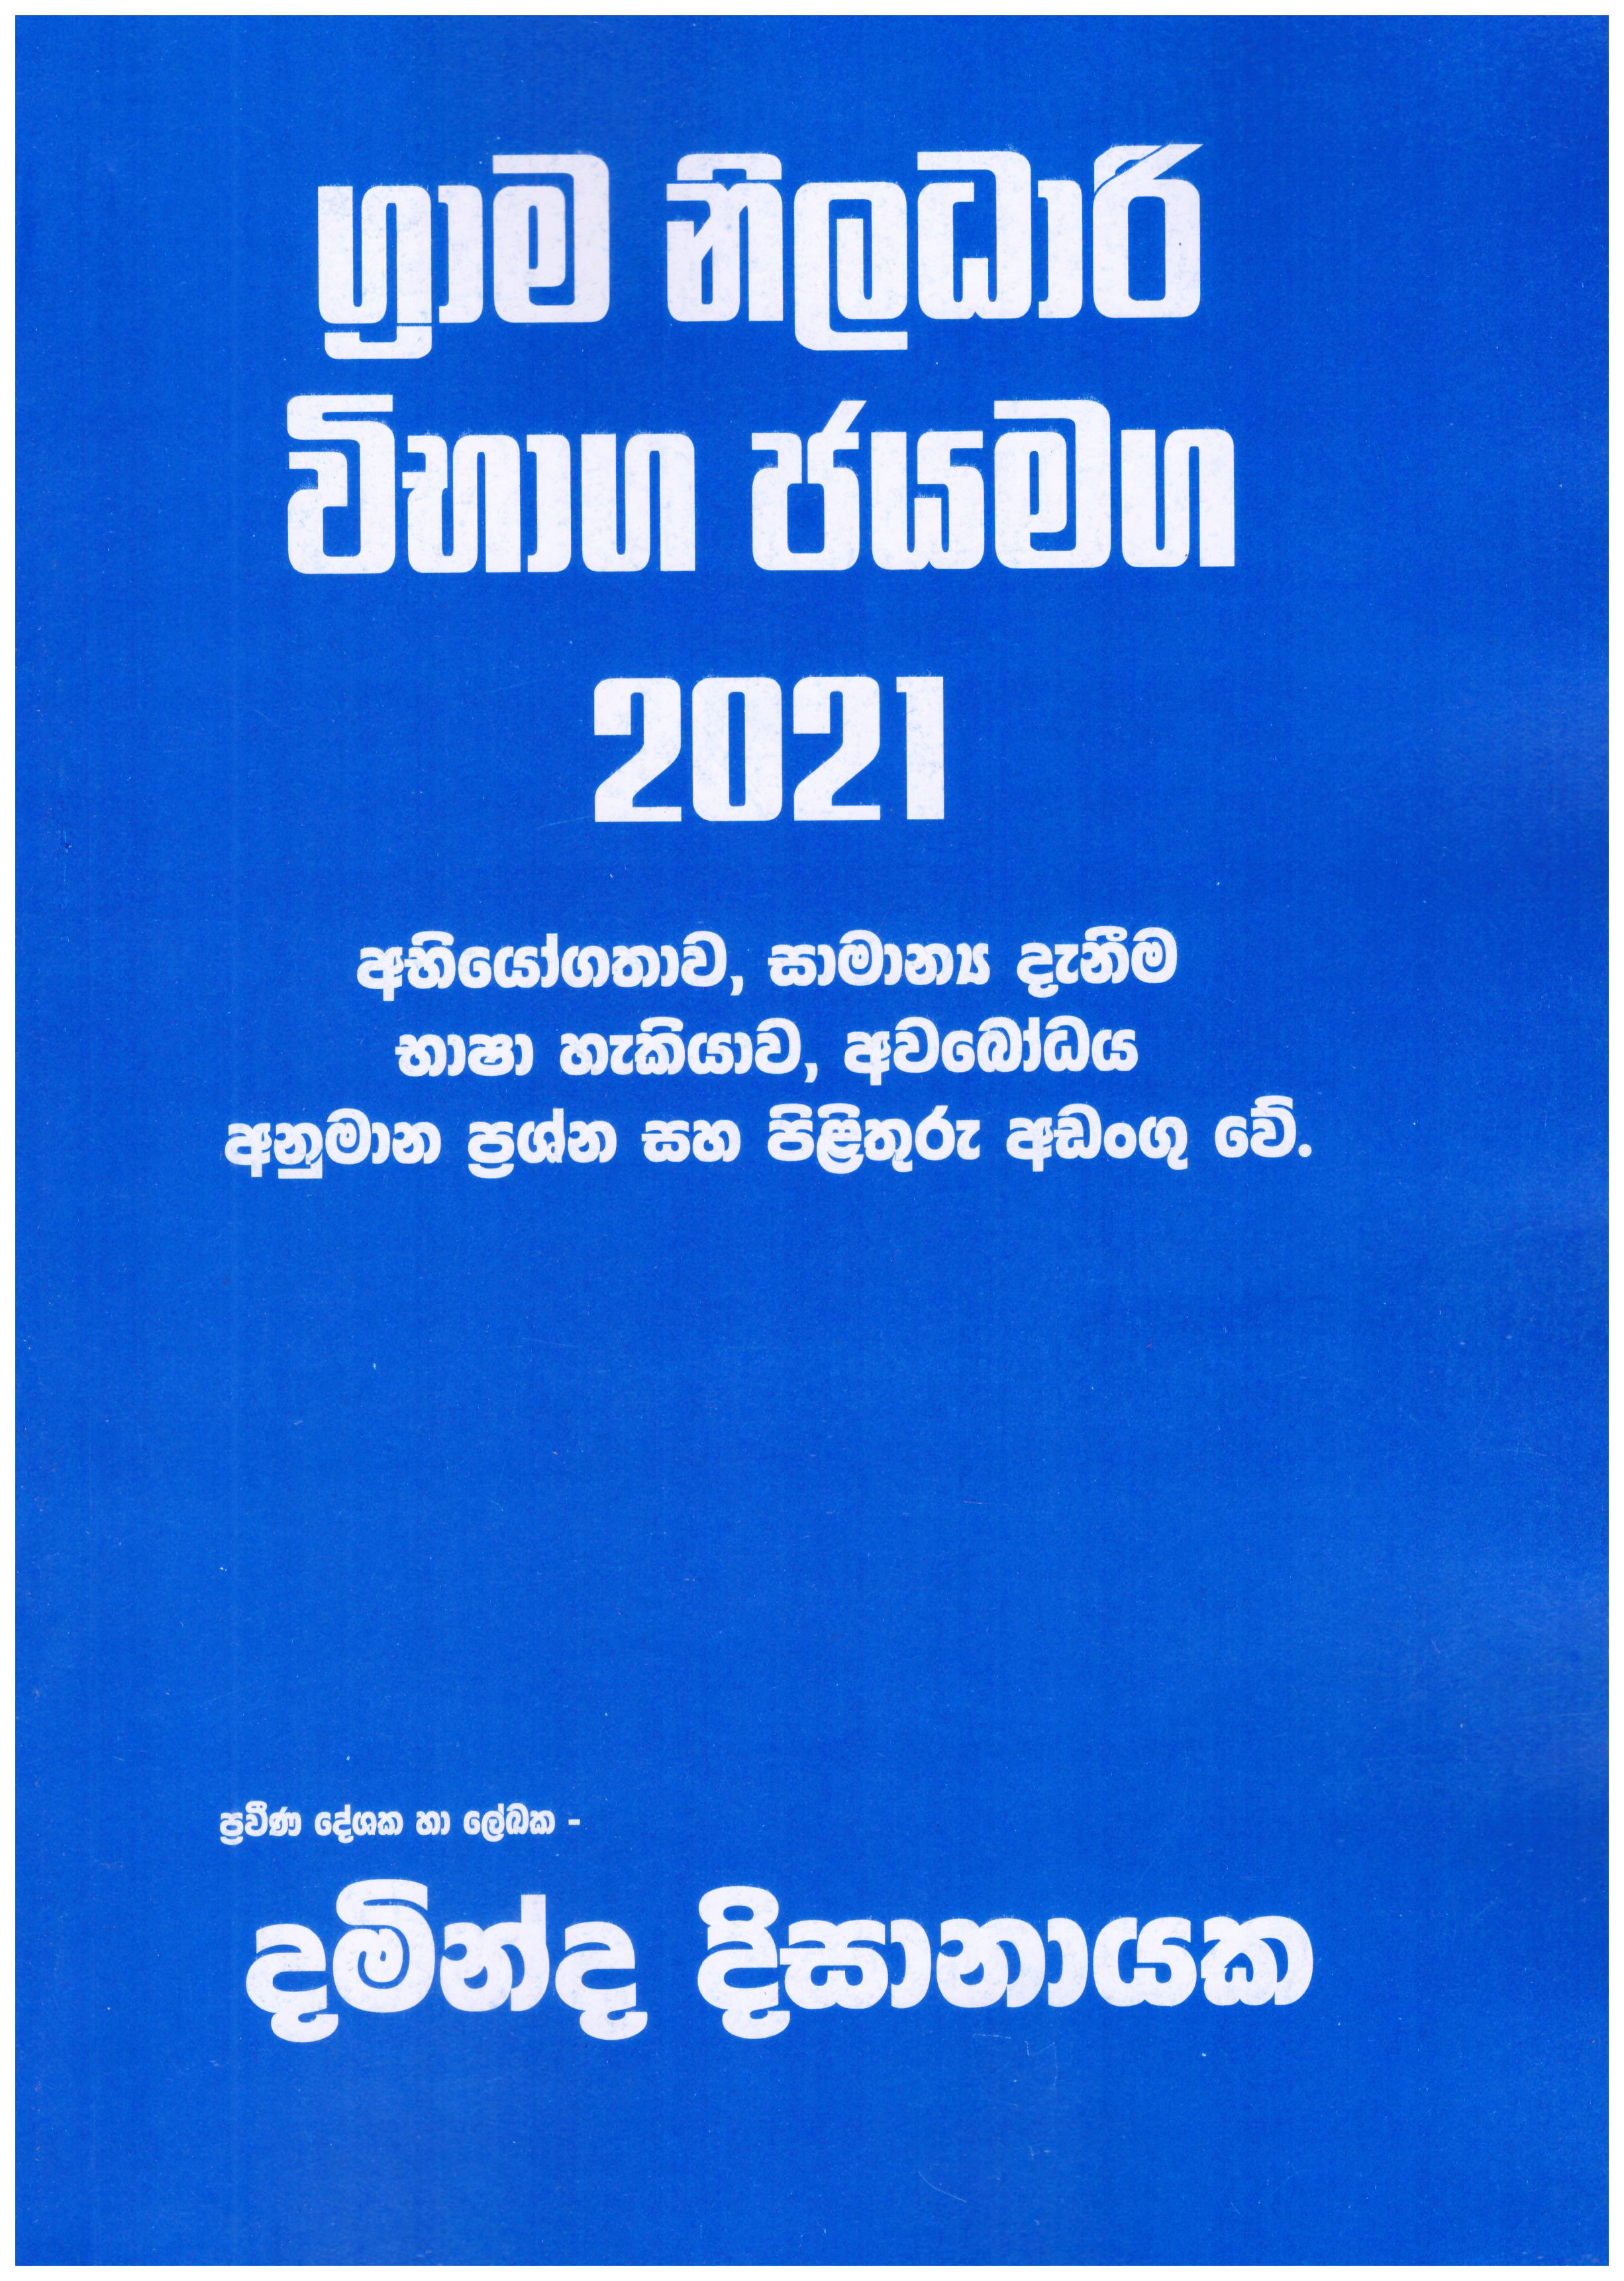 Grama Niladari Vibaga Jayamaga 2021